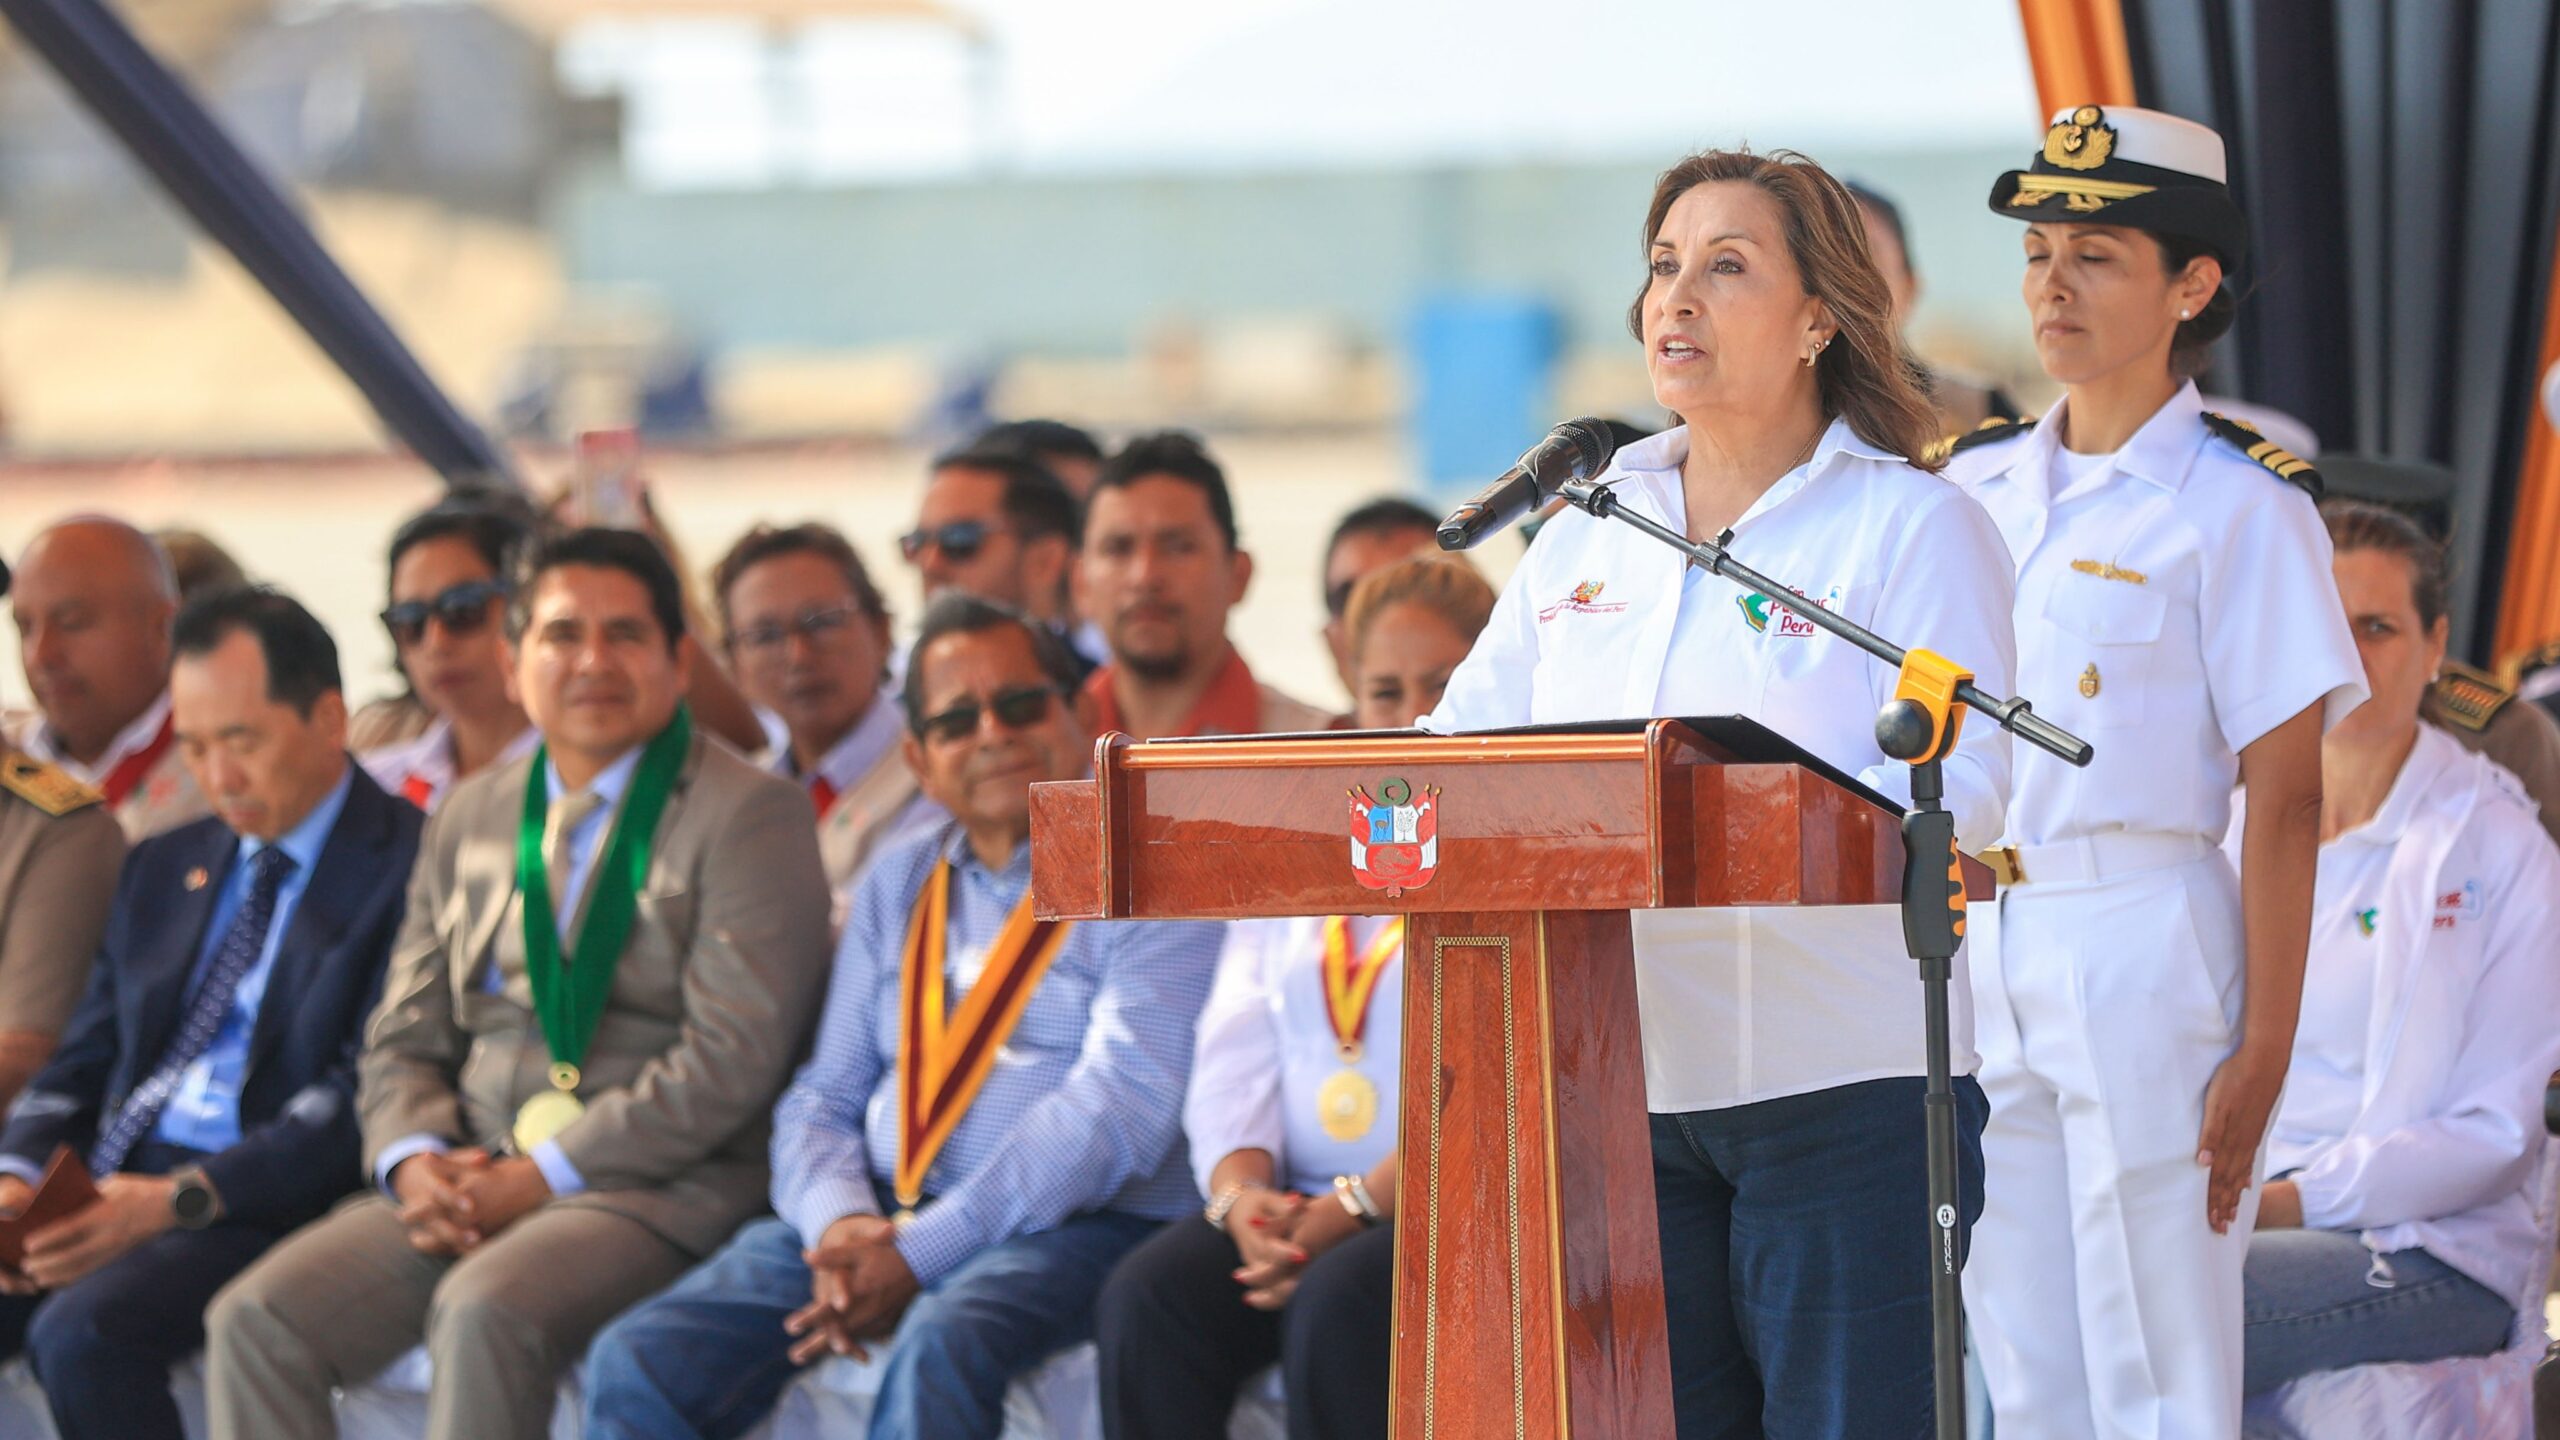 Le président péruvien demande la démission du procureur général